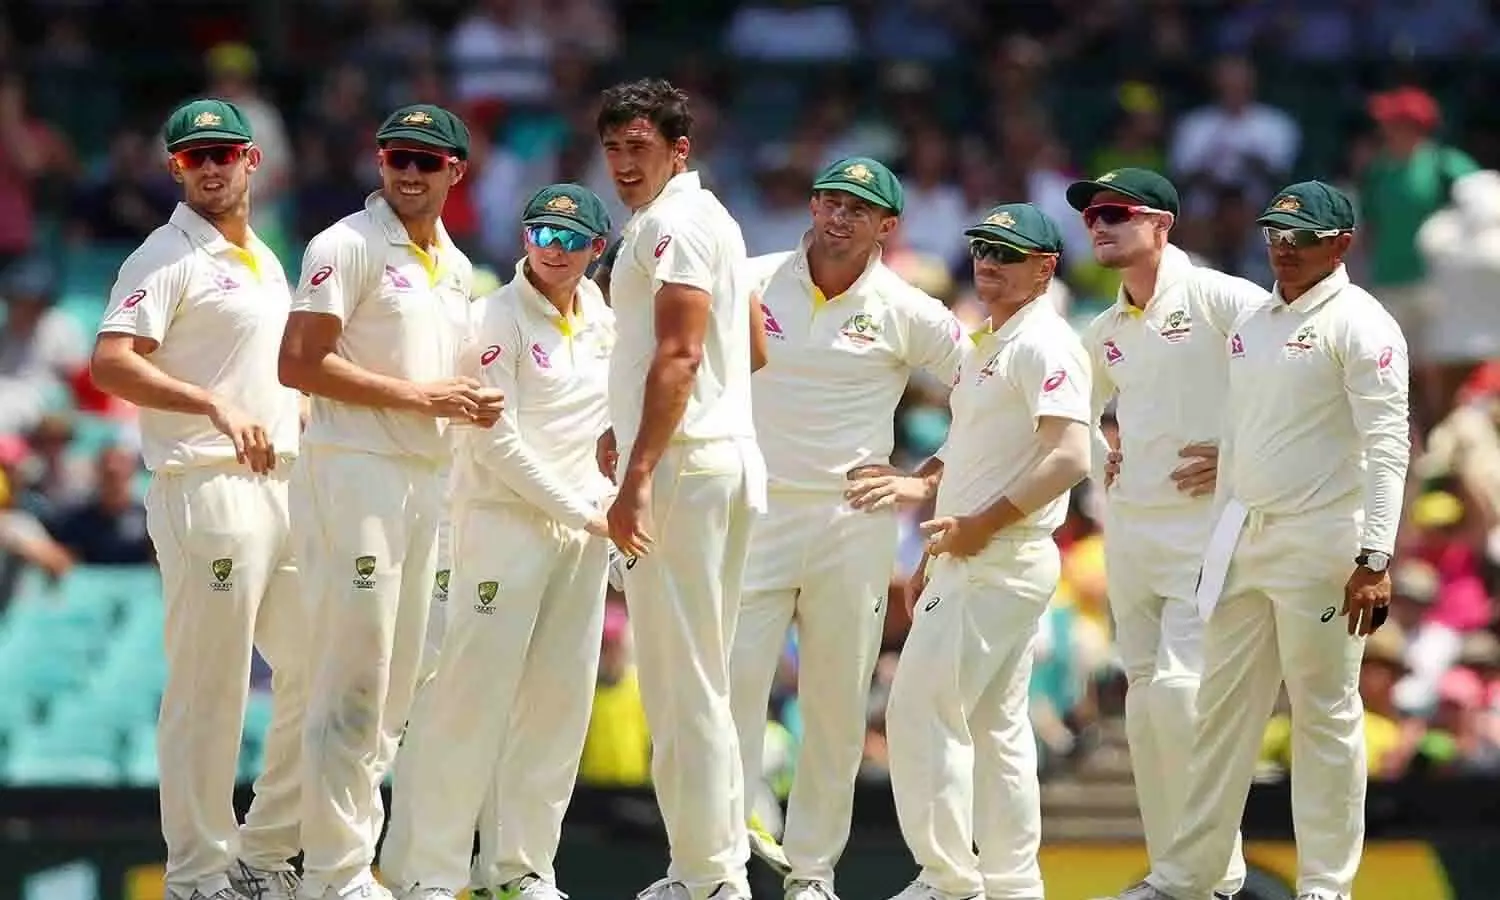 चार स्पिनर लेकर भारत आएगी कंगारू टीम, क्रिकेट ऑस्ट्रेलिया ने किया टीम इंडिया के खिलाफ टेस्ट टीम का एलान